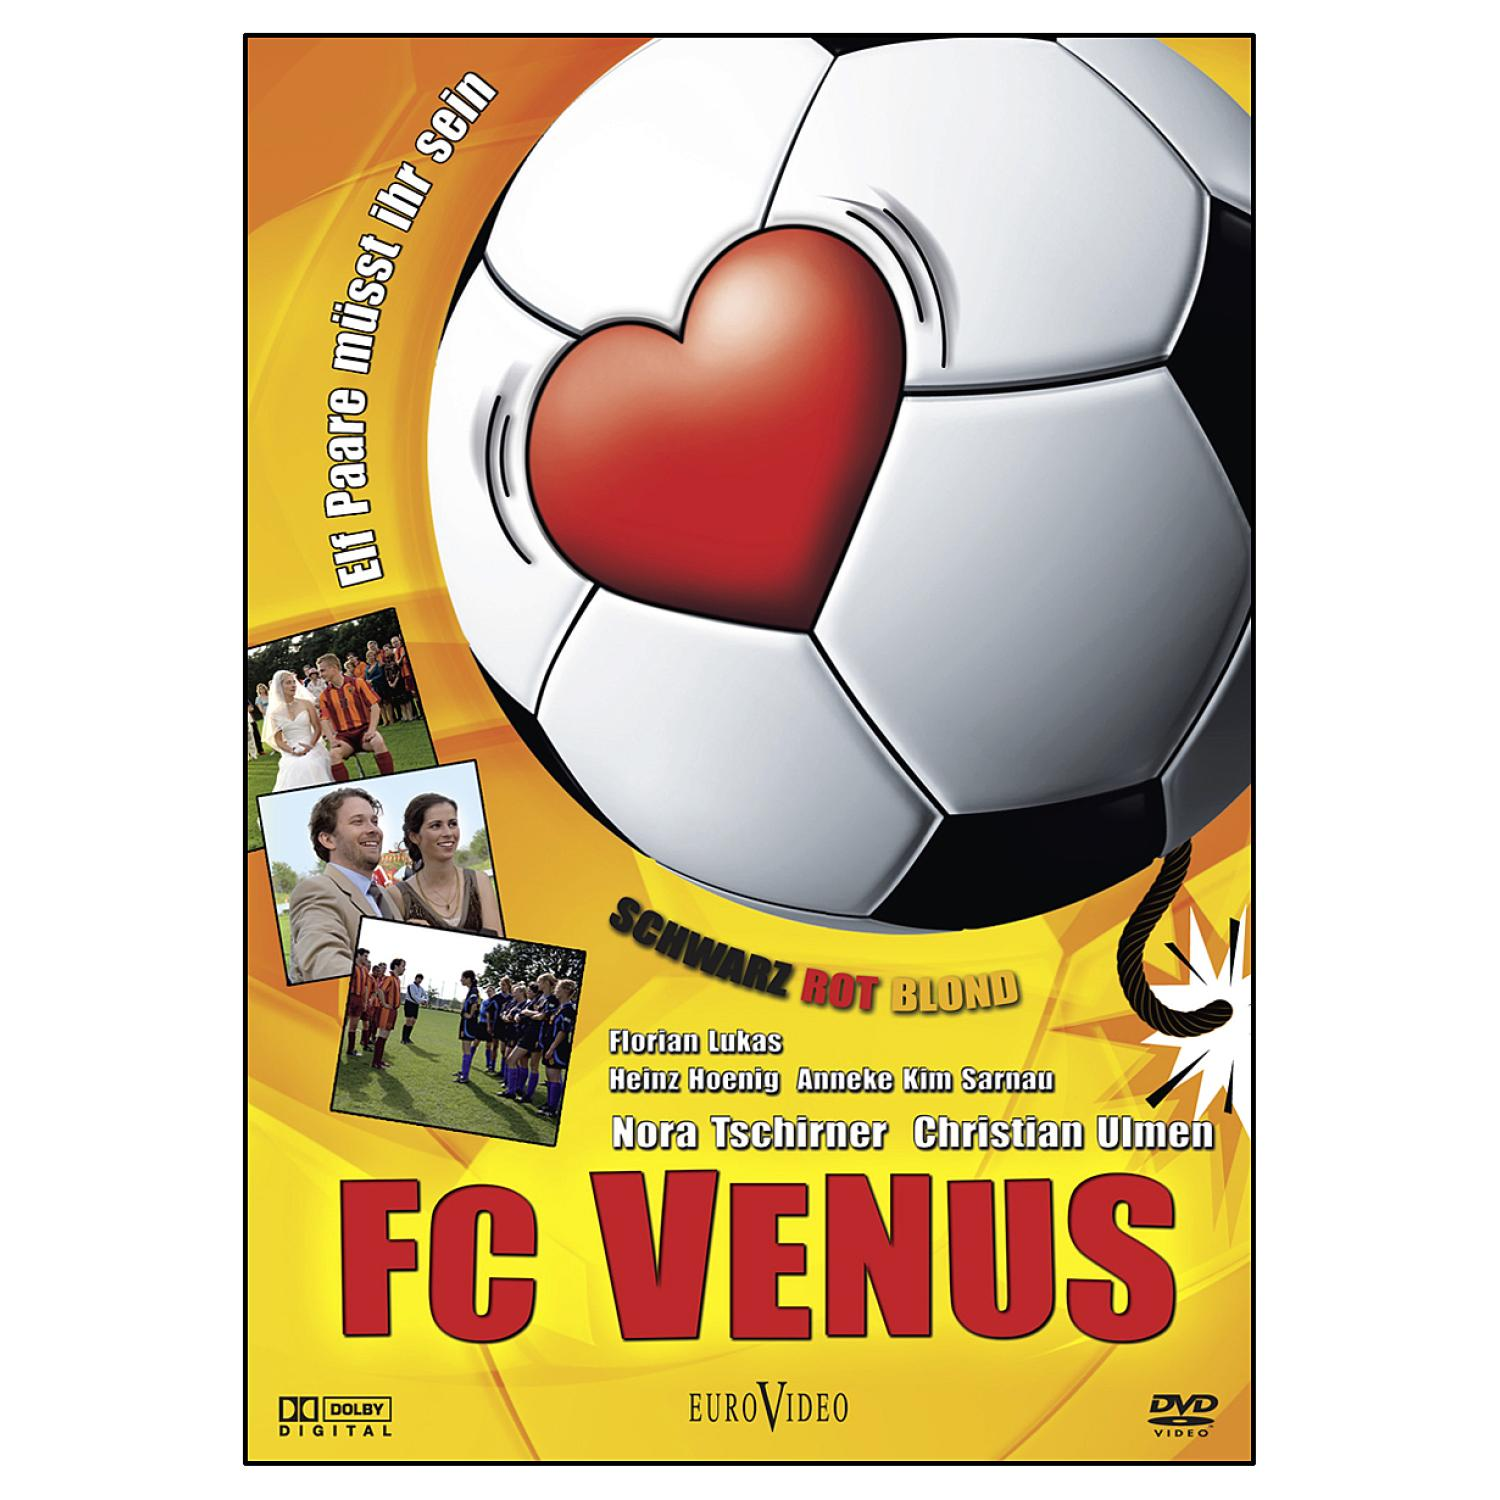 BLOND - FC DVD SCHWARZ VENUS ROT